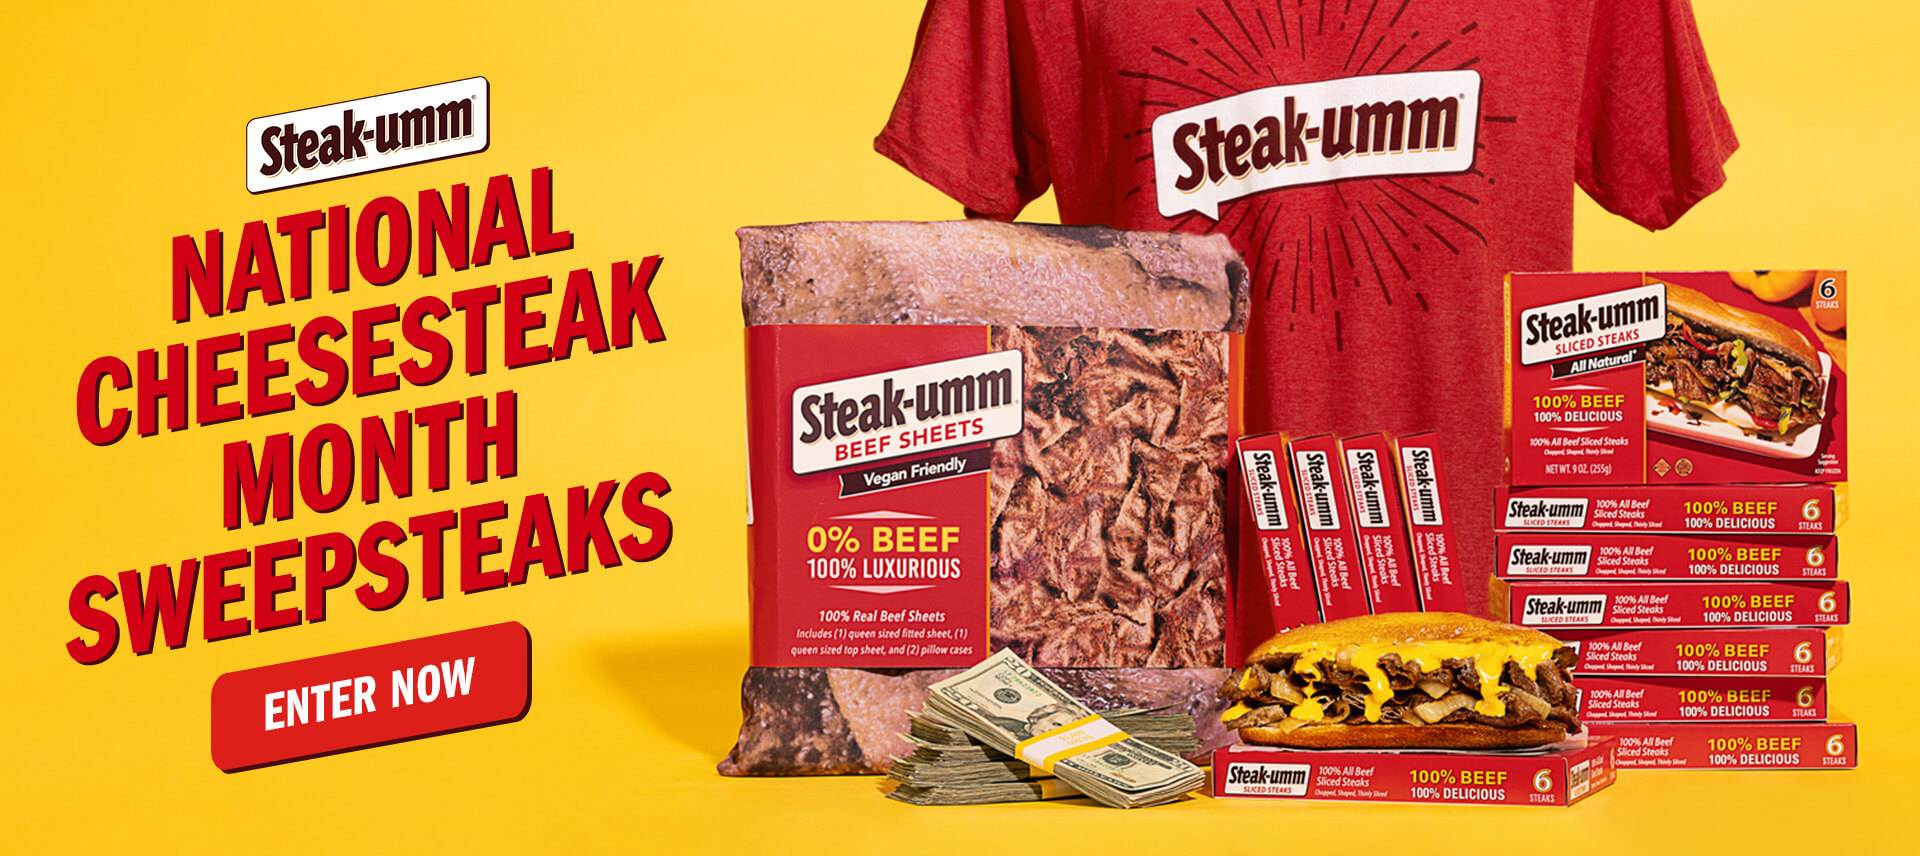 Steak-umm giveaway